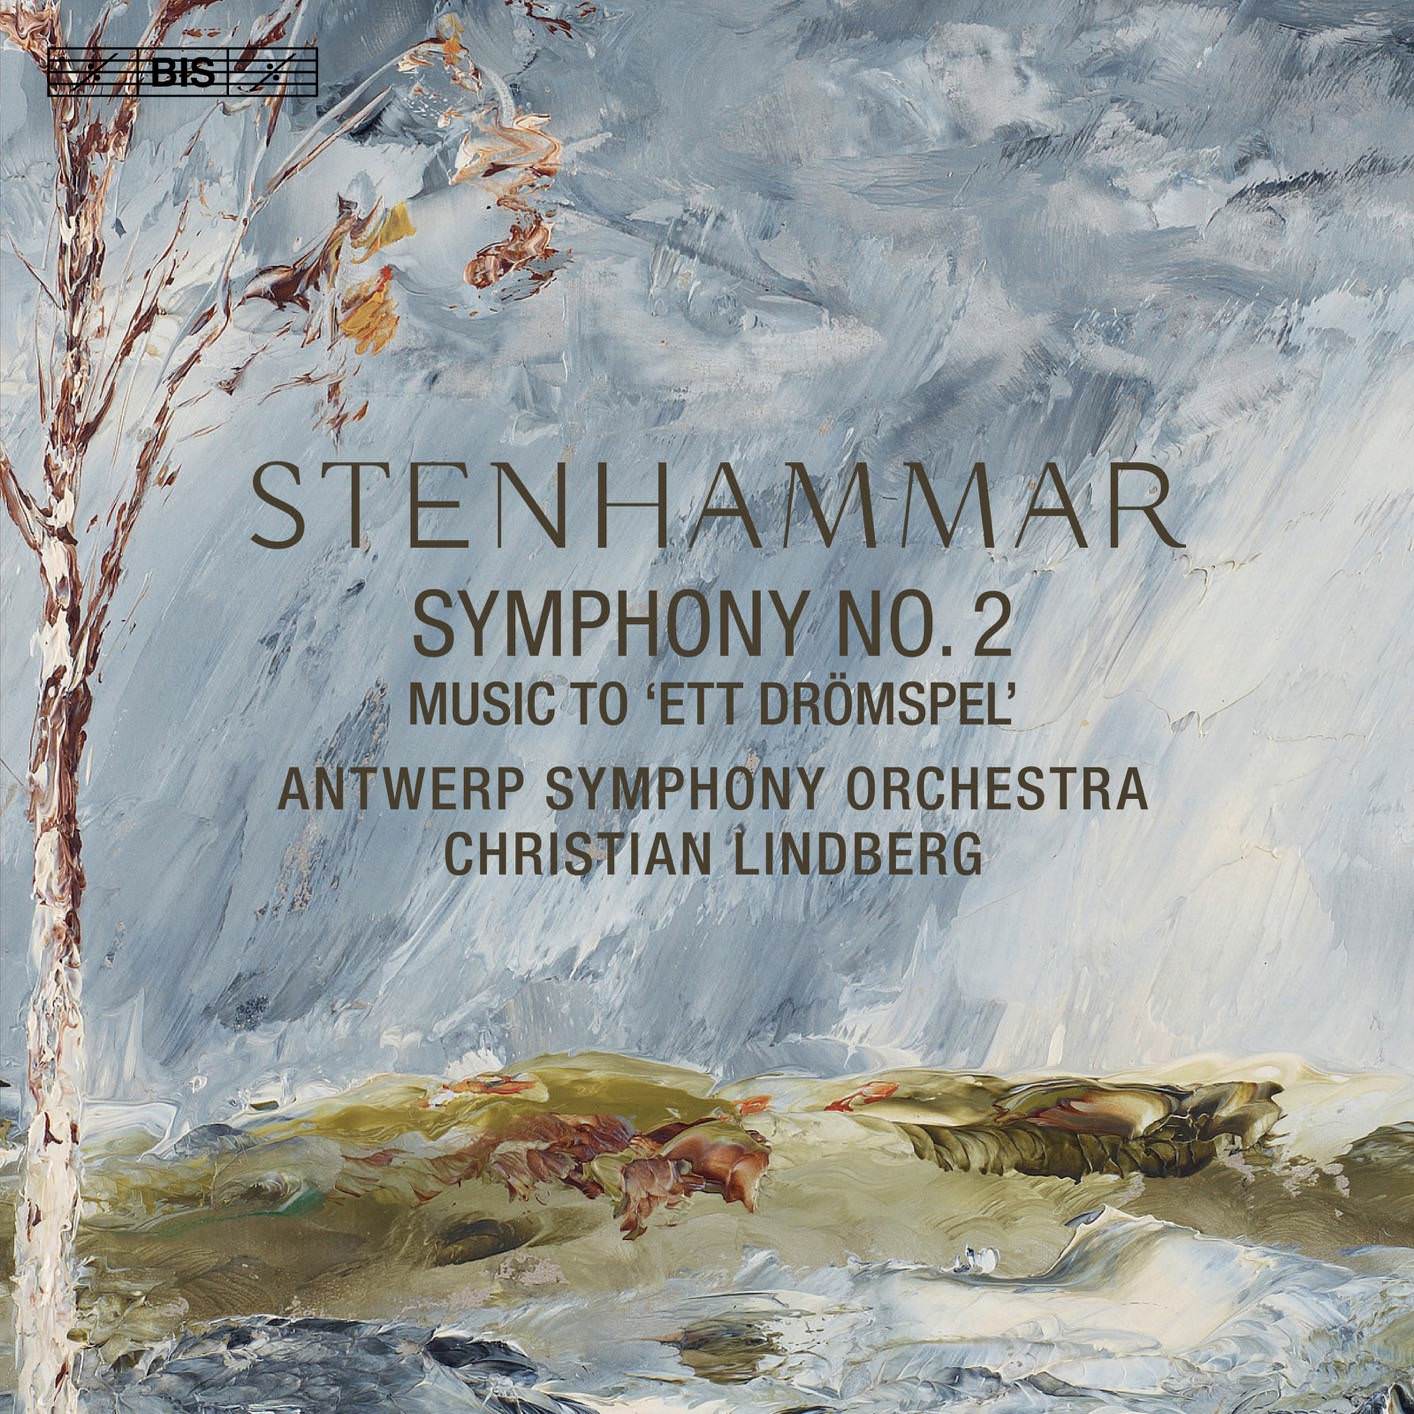 Antwerp Symphony Orchestra & Christian Lindberg – Stenhammar: Symphony No. 2 & Ett dromspel (2018) [FLAC 24bit/96kHz]